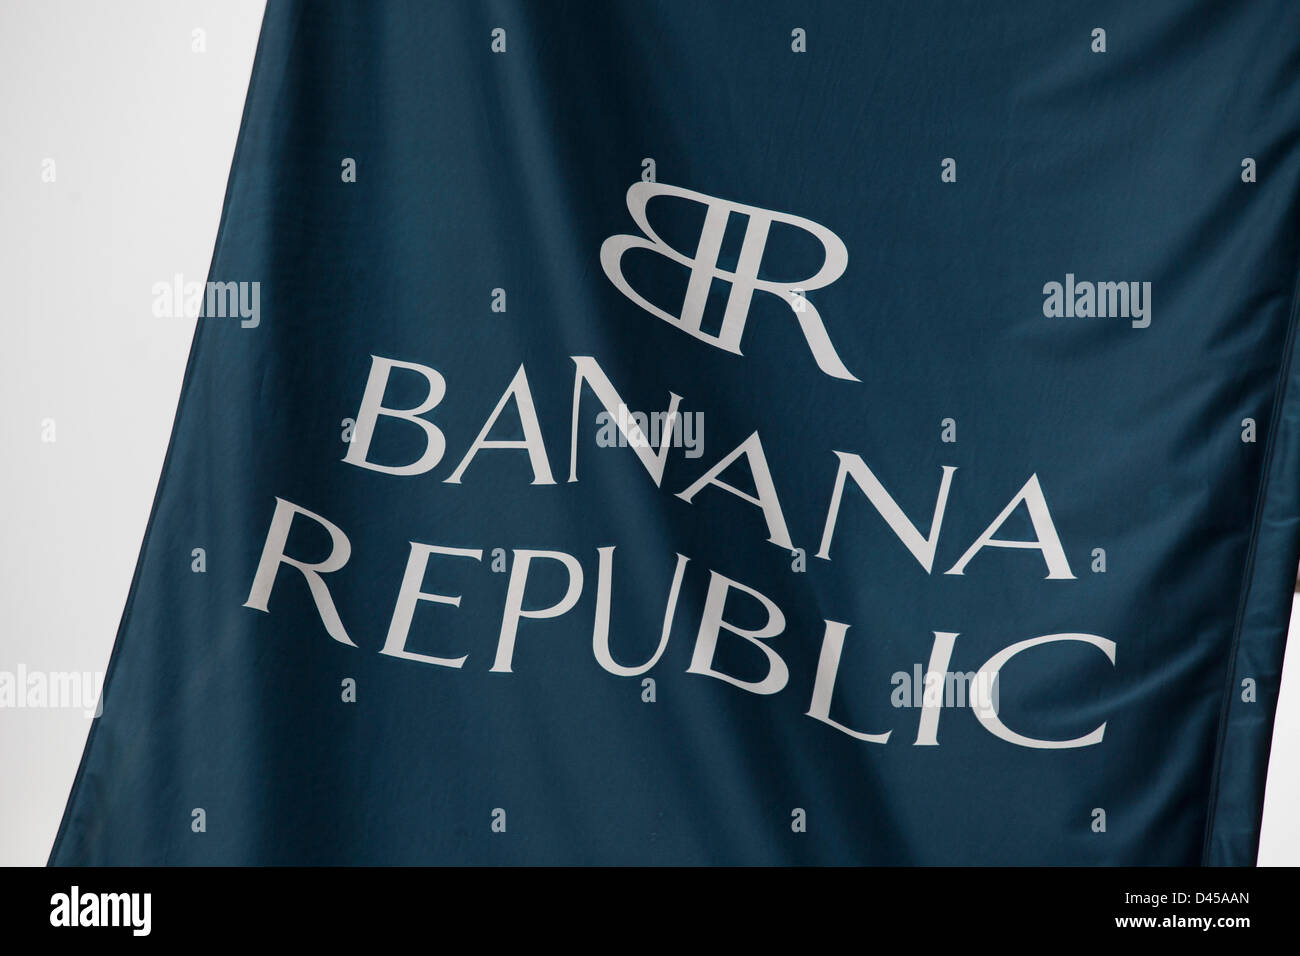 Segno per negozio di abbigliamento repubblica delle banane Foto stock -  Alamy